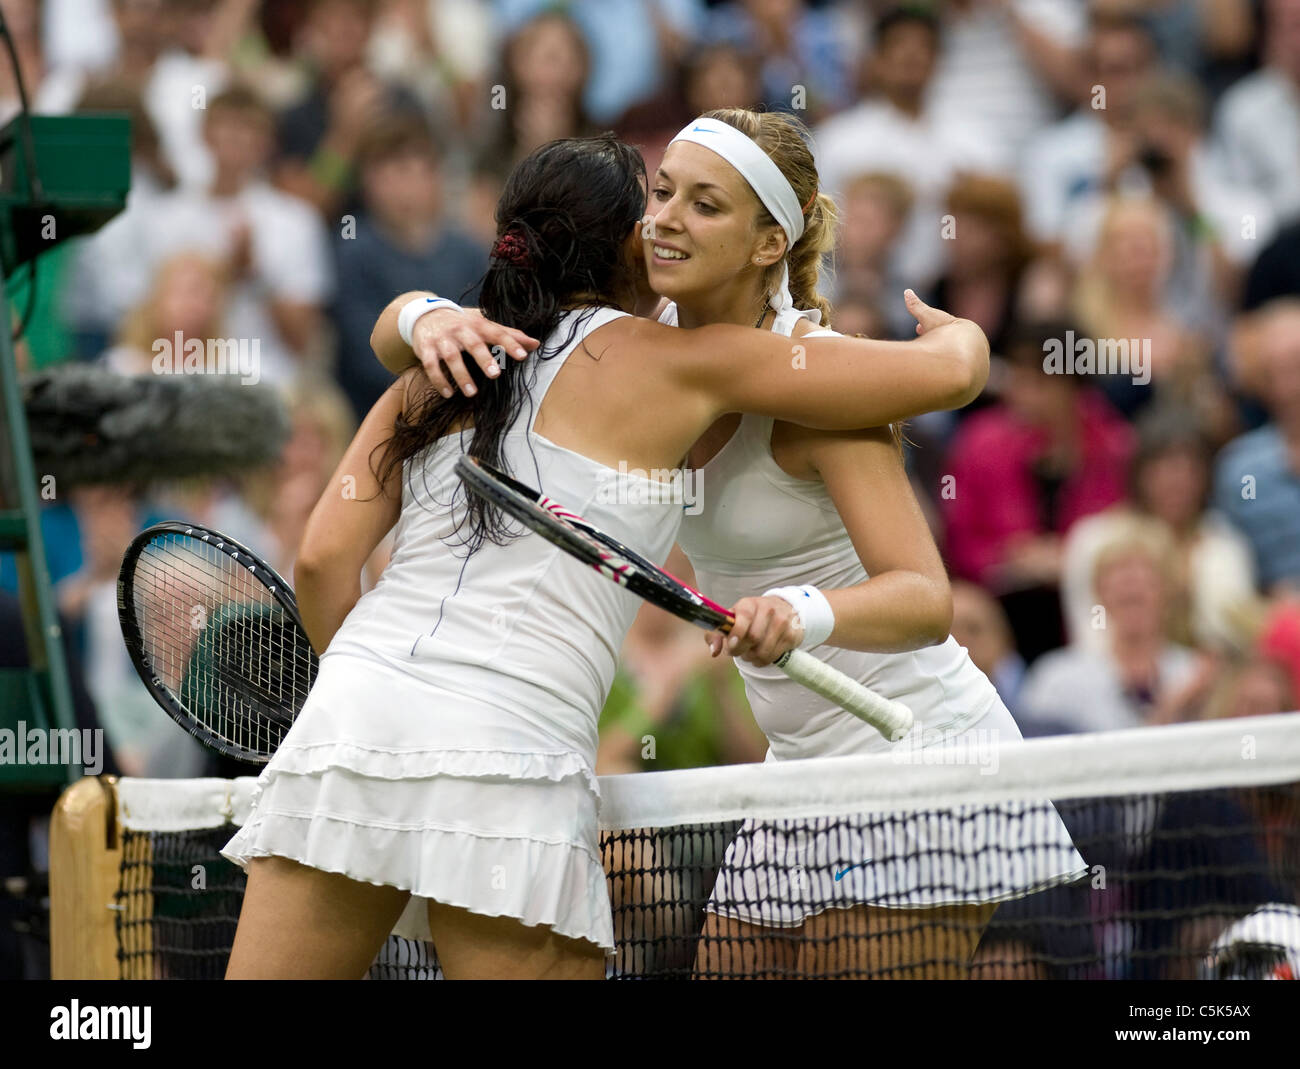 Sabine Lisicki (GER) (r) hugs Marion Bartoli (FRA) après un match lors de l'édition 2011 des Championnats de tennis de Wimbledon Banque D'Images